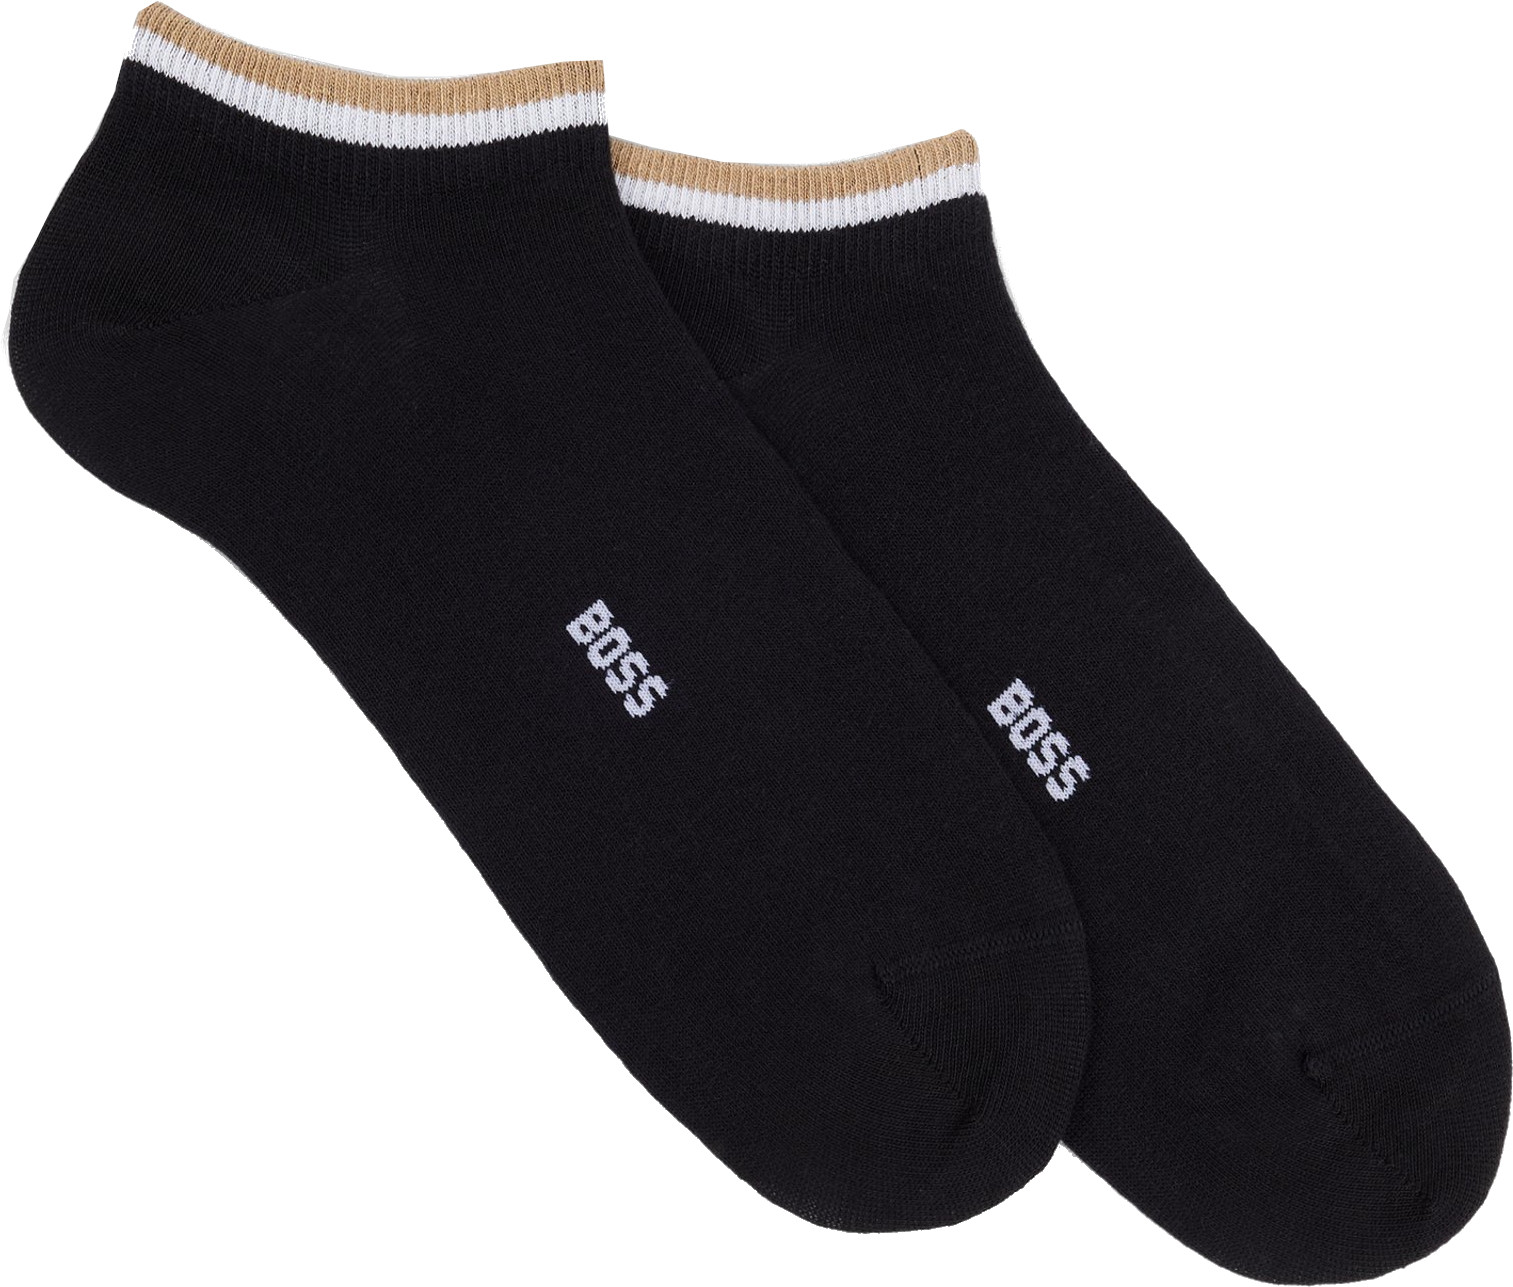 Hugo Boss 2 PACK - pánské ponožky BOSS 50491192-001 43-46